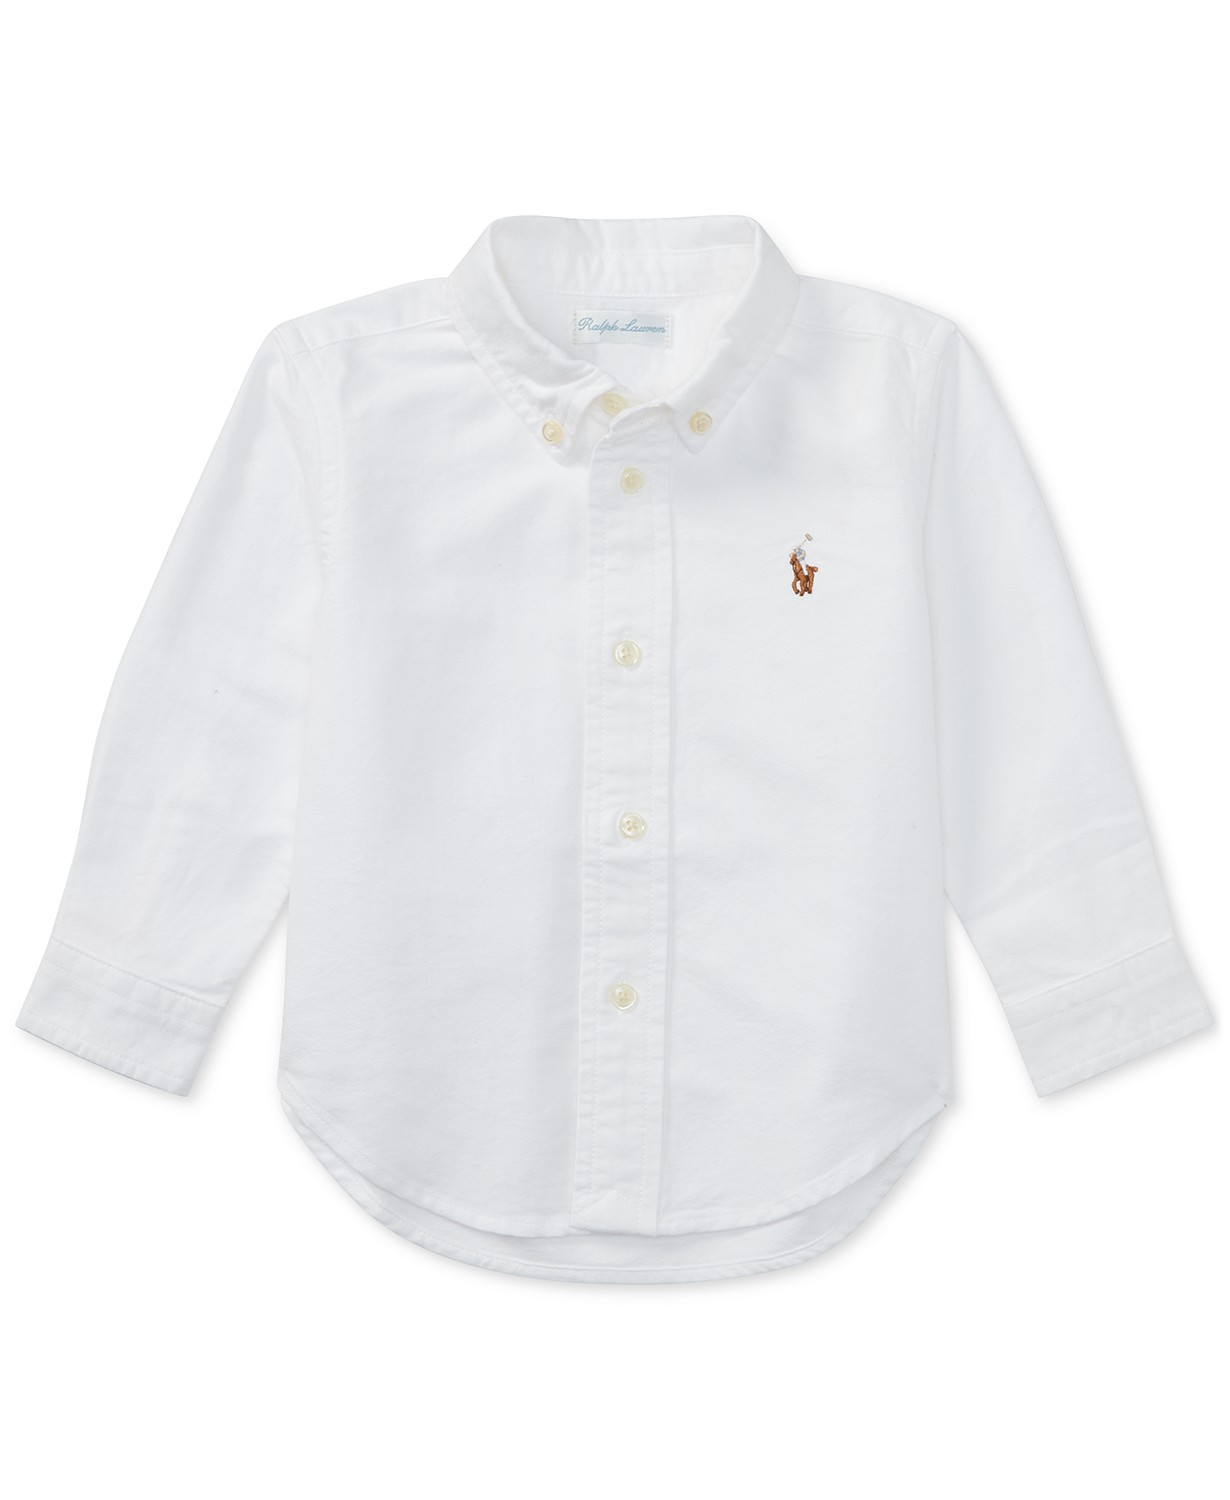 Baby Boys Cotton Oxford Button Shirt